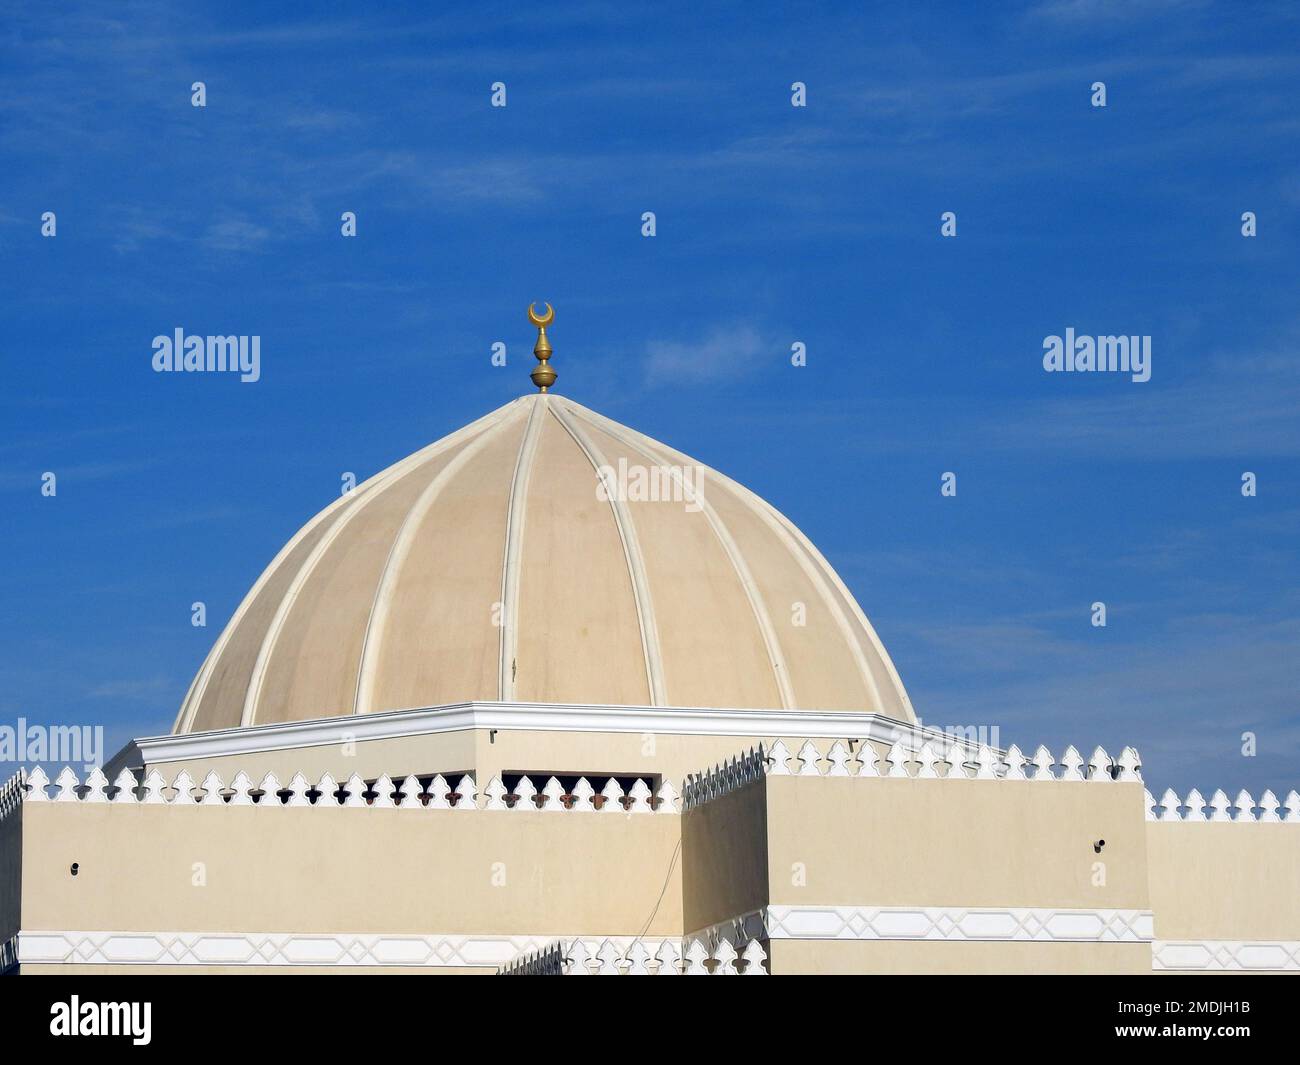 Une grande coupole d'une mosquée contre un beau ciel bleu avec des nuages à la lumière du jour, les mosquées sont le lieu de culte et de prières pour les musulmans où ils le font Banque D'Images